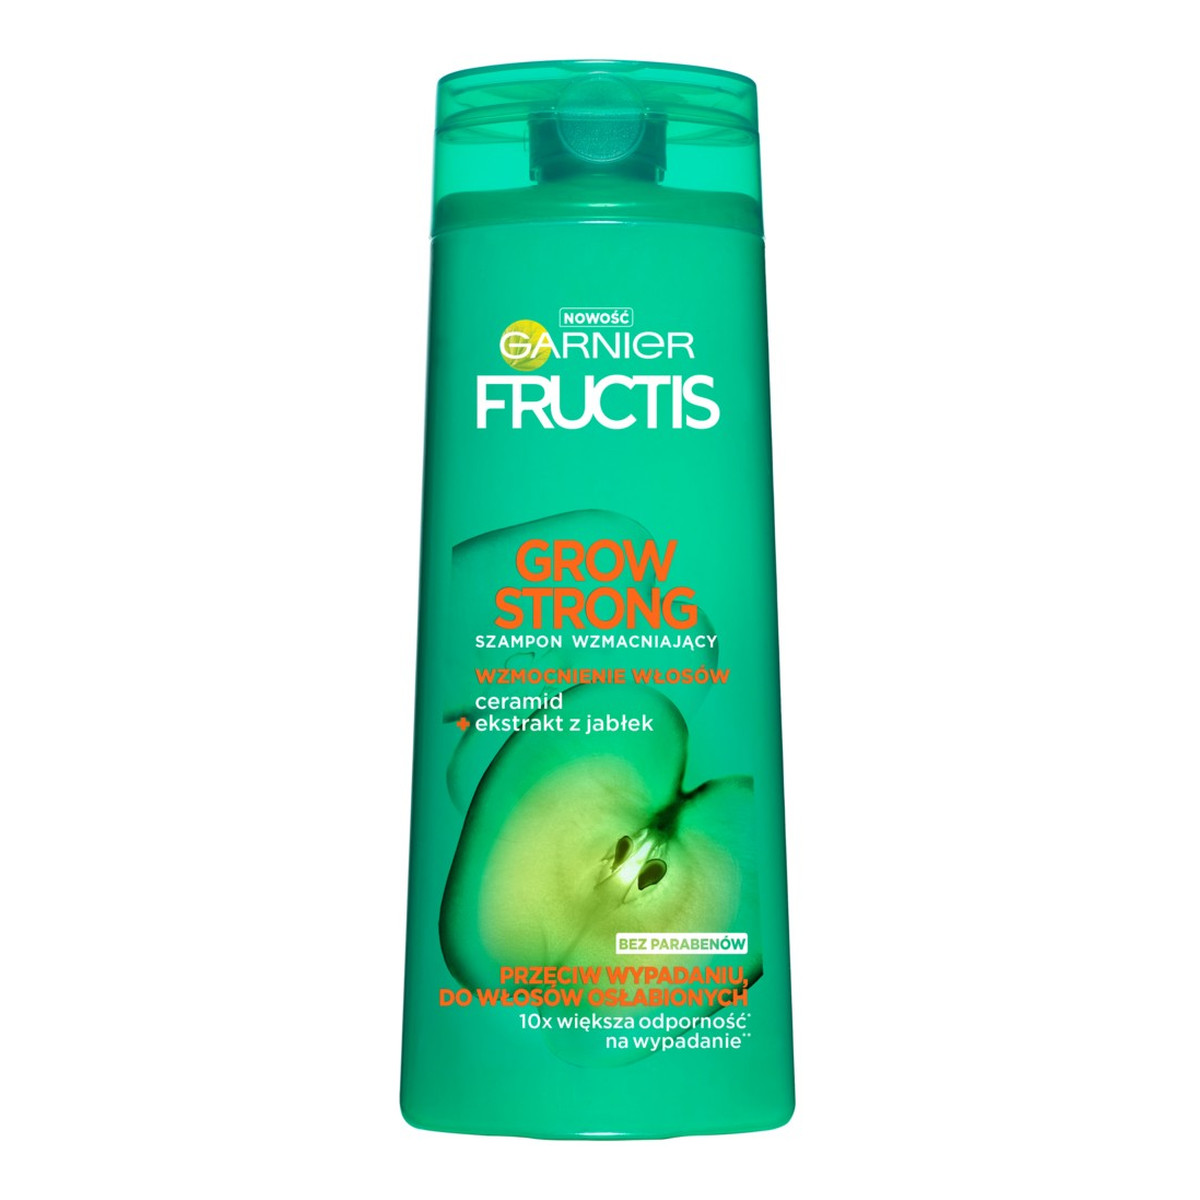 Garnier Fructis Grow Strong szampon wzmacniający do włosów osłabionych 250ml